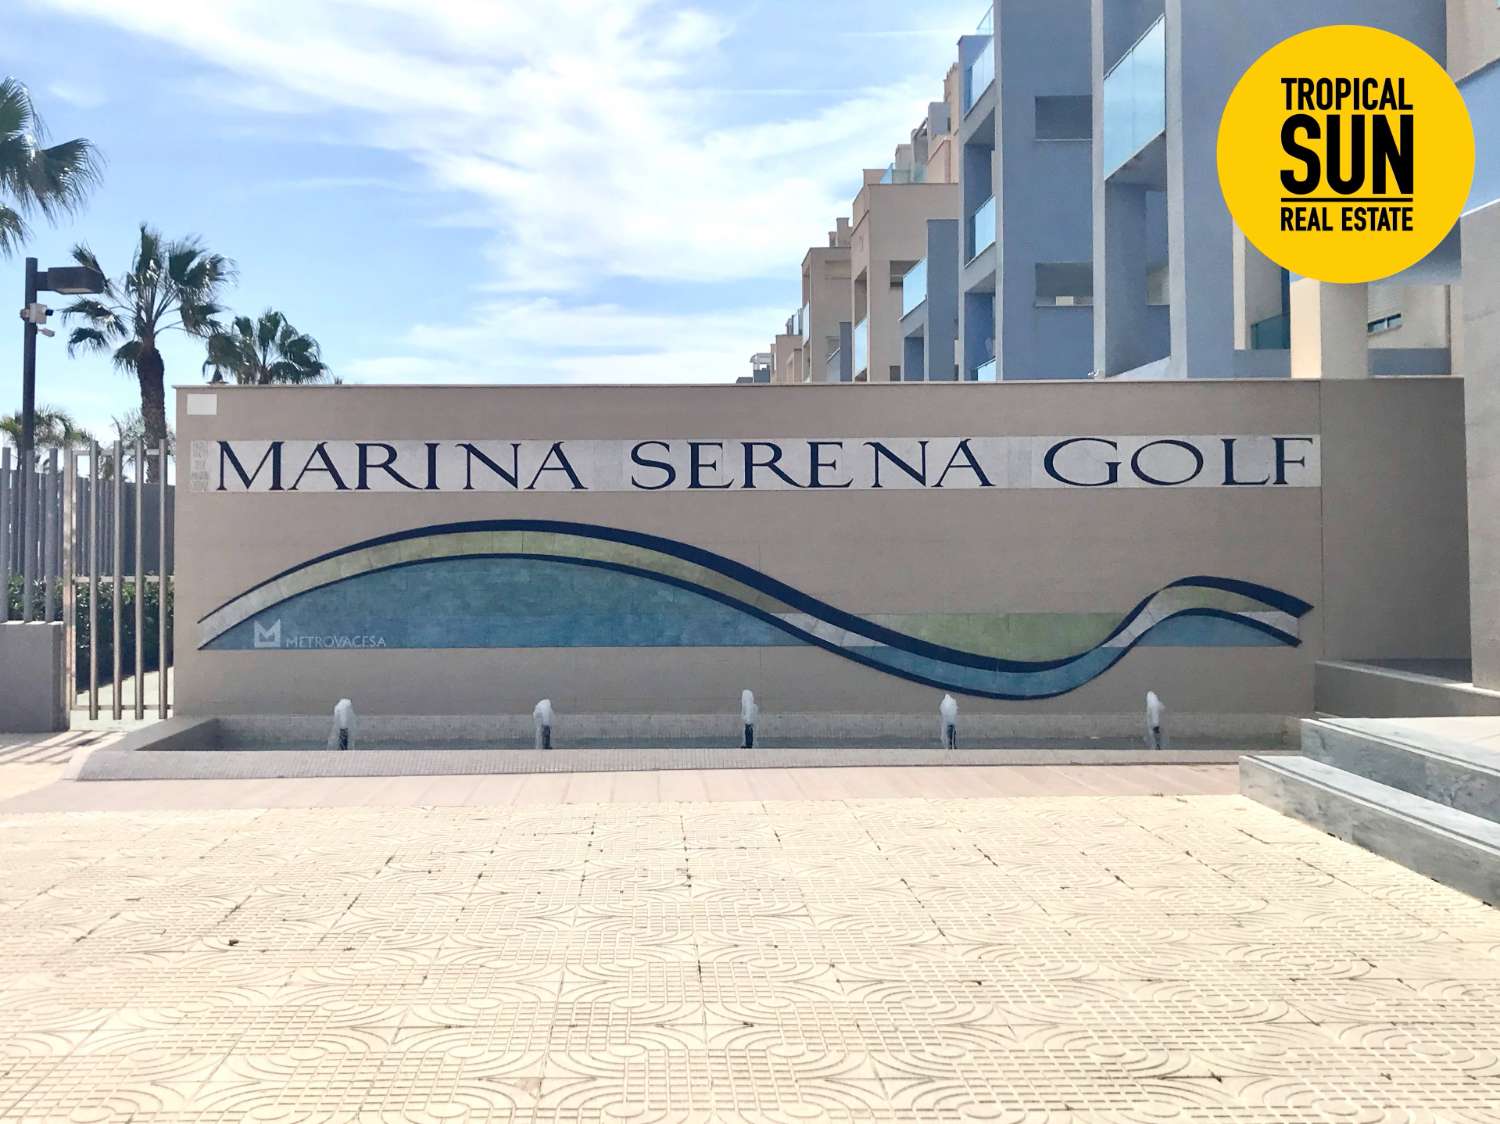 Marina Serena Golf Urbanisation: der perfekte Ort zum Leben. Entdecken Sie dieses fantastische Duplex-Penthouse.